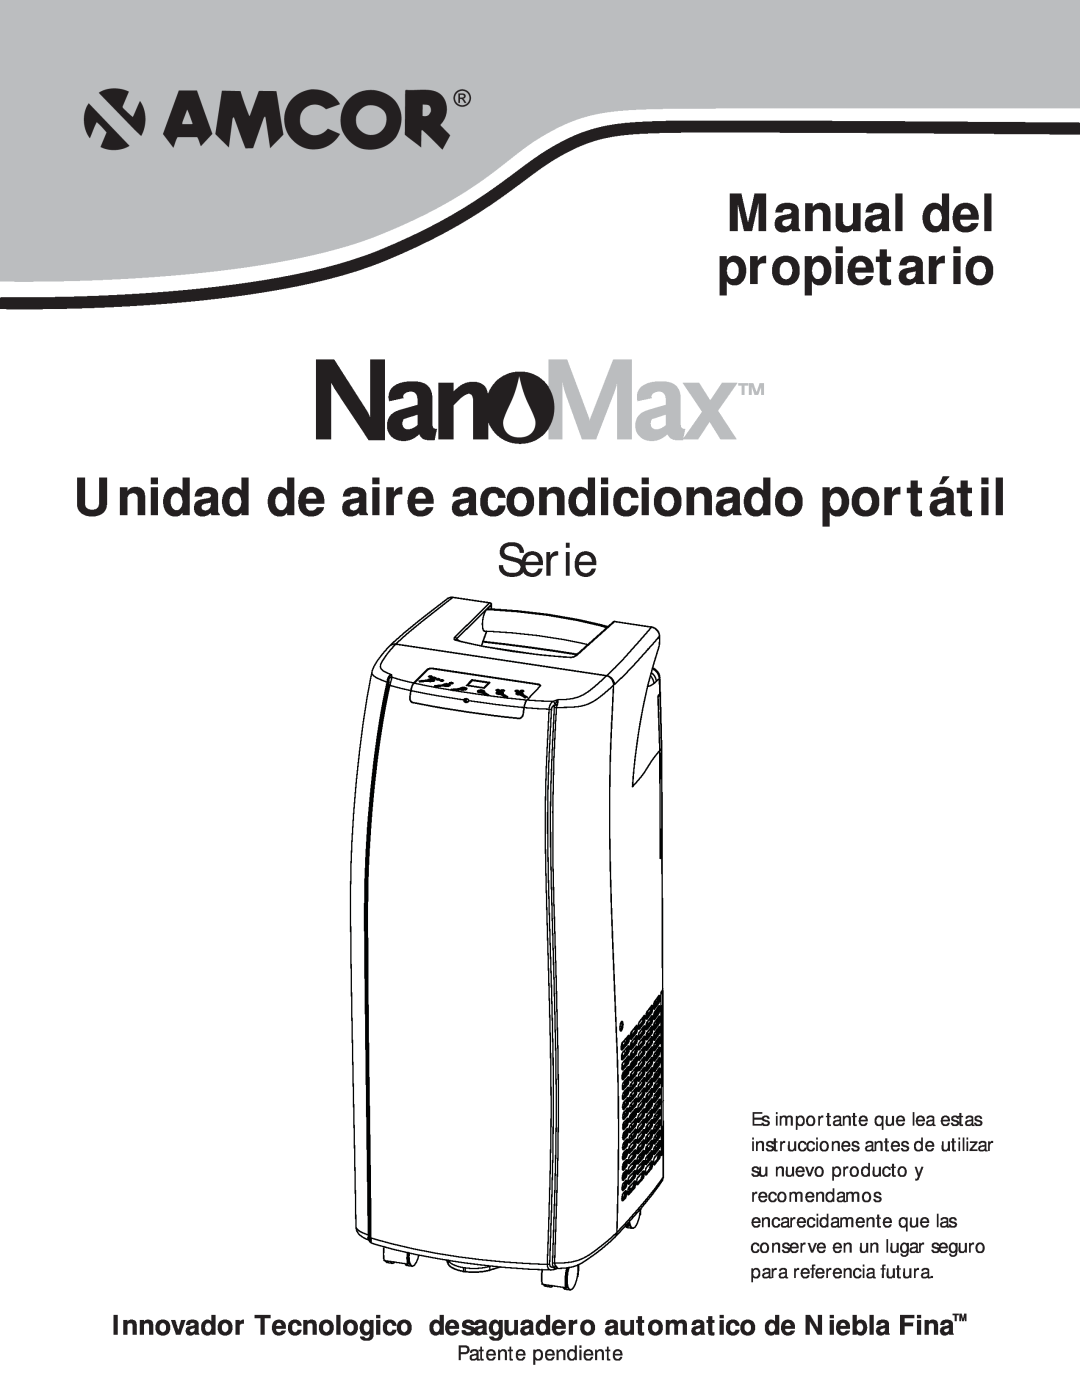 Amcor PORTABLE AIRCONDITIONER owner manual Manual del propietario, Unidad de aire acondicionado portátil, Serie 